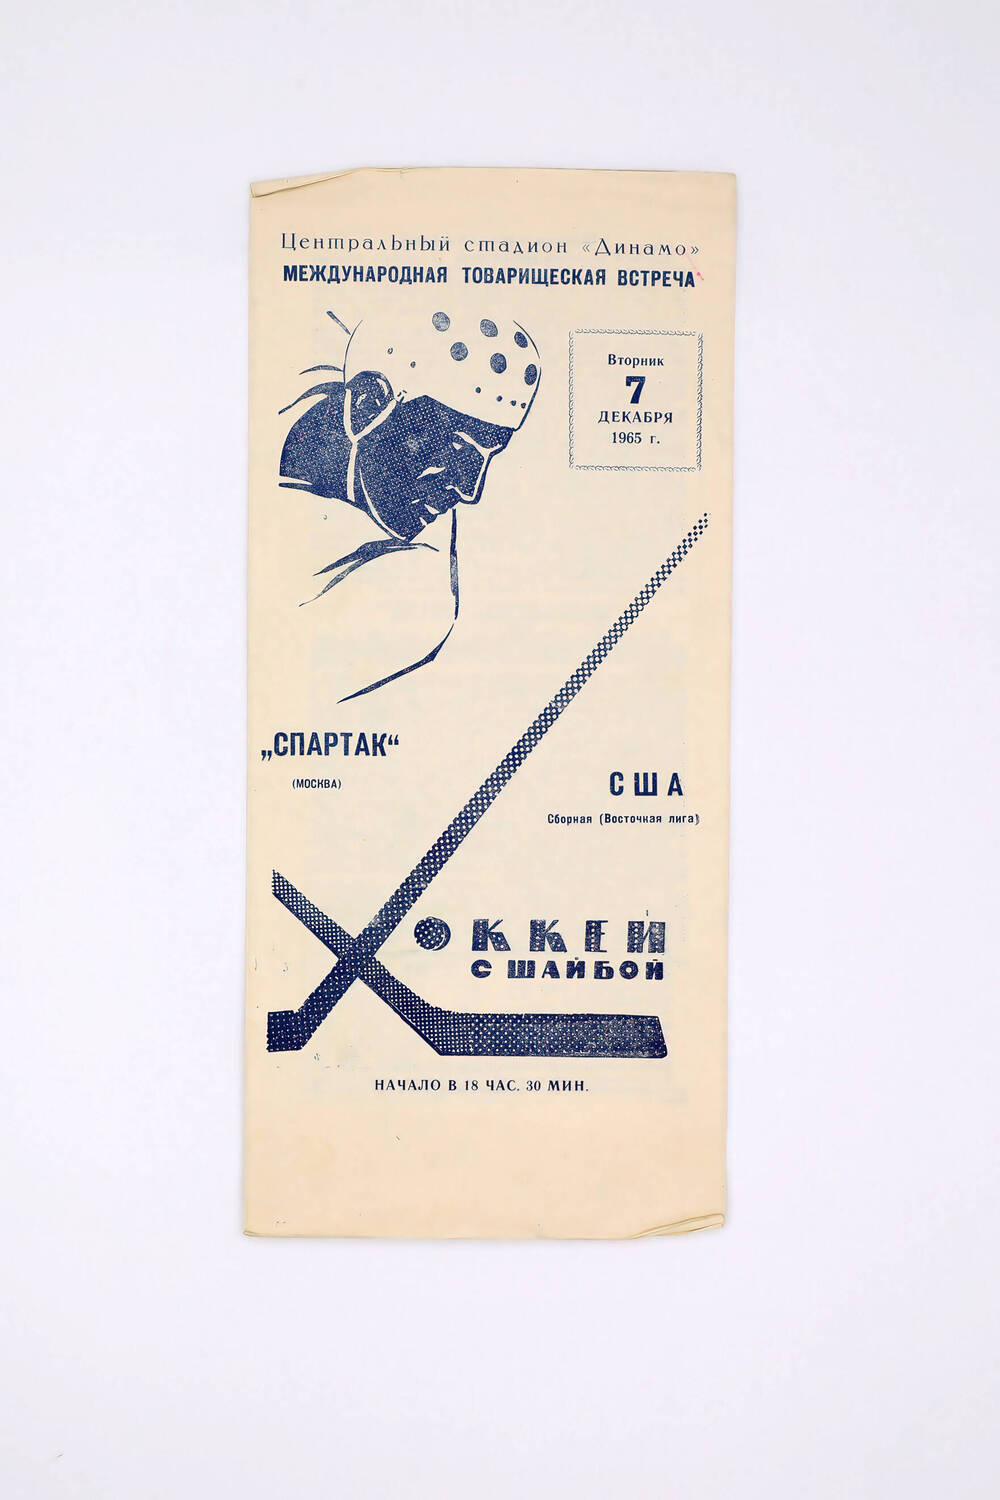 Программа матча хоккейного «СПАРТАК» (Москва) –Сборная США (Восточная лига) 7 декабря 1965 г.